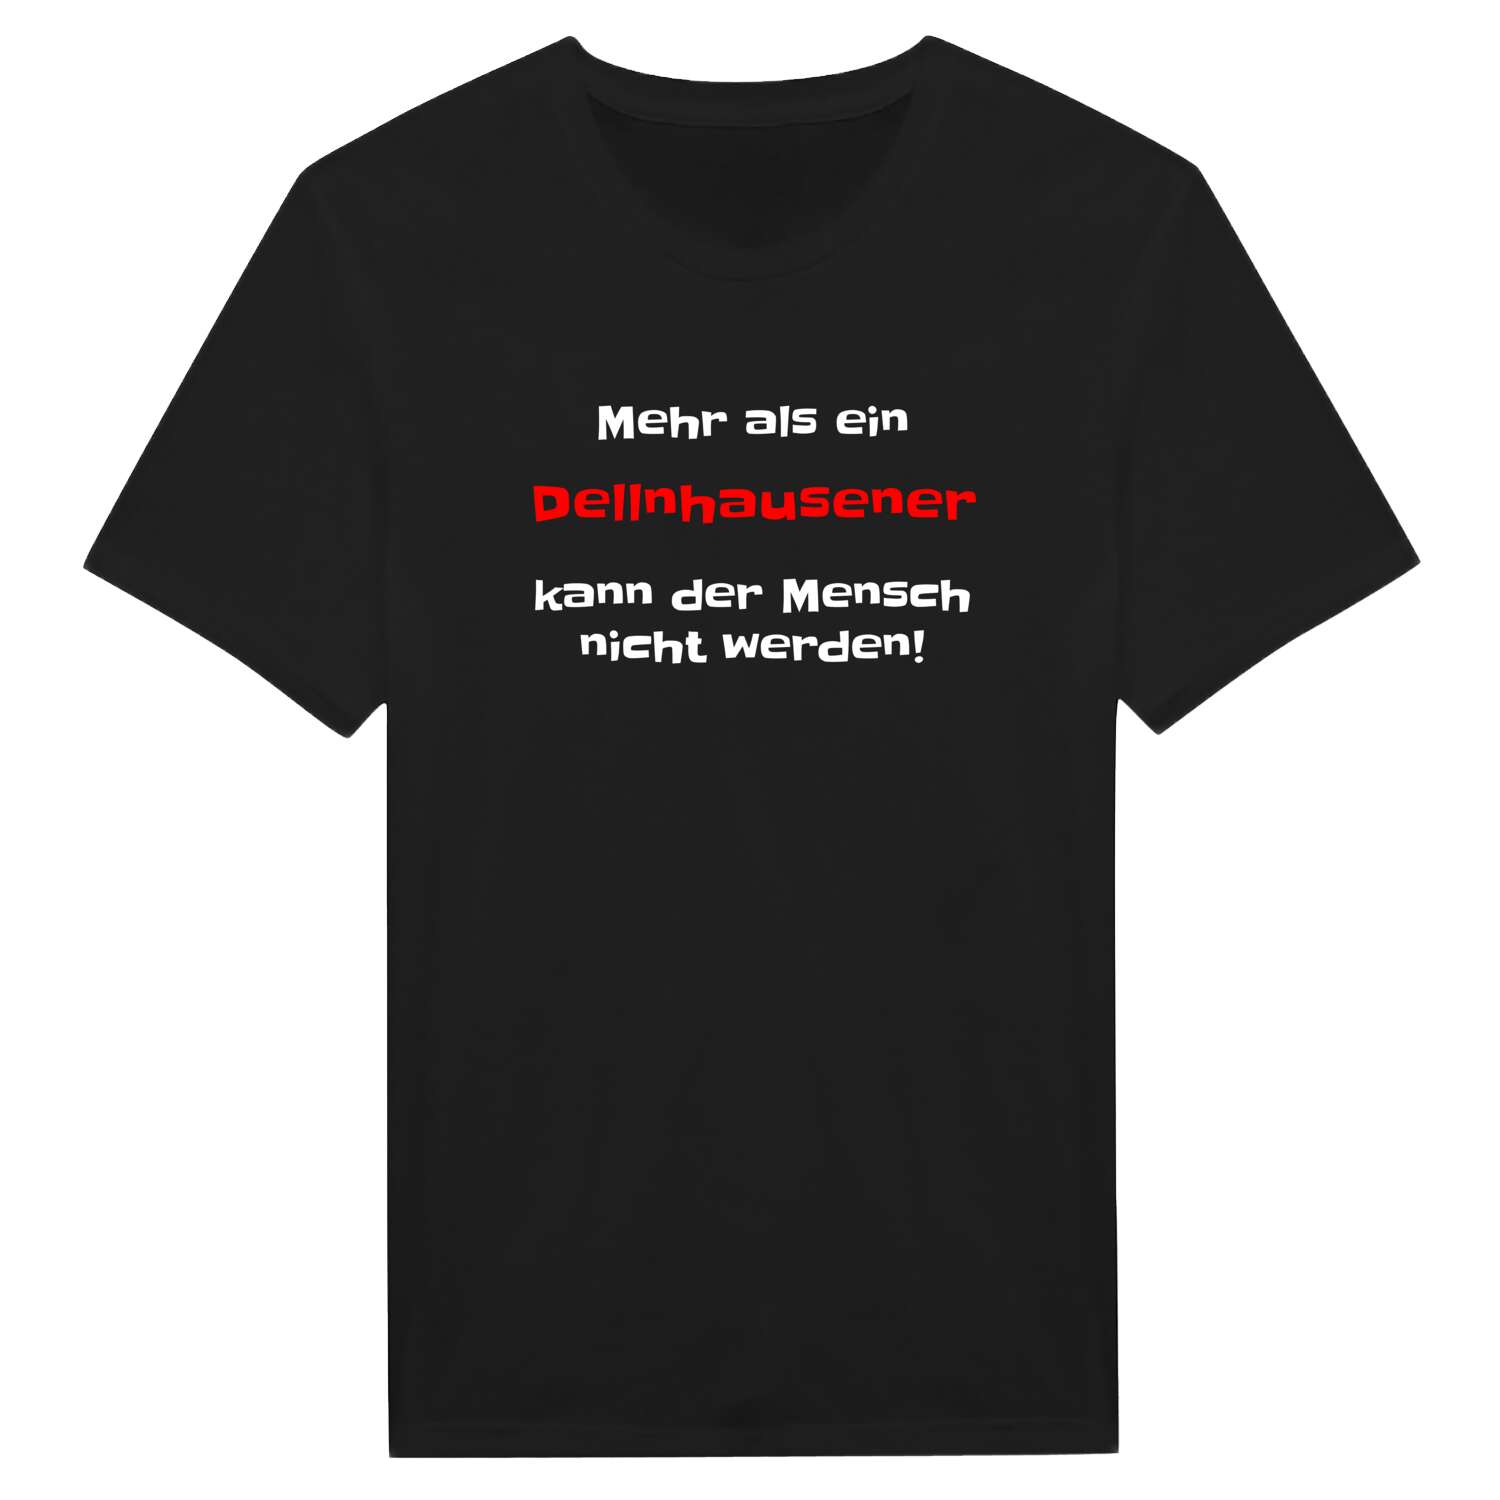 Dellnhausen T-Shirt »Mehr als ein«